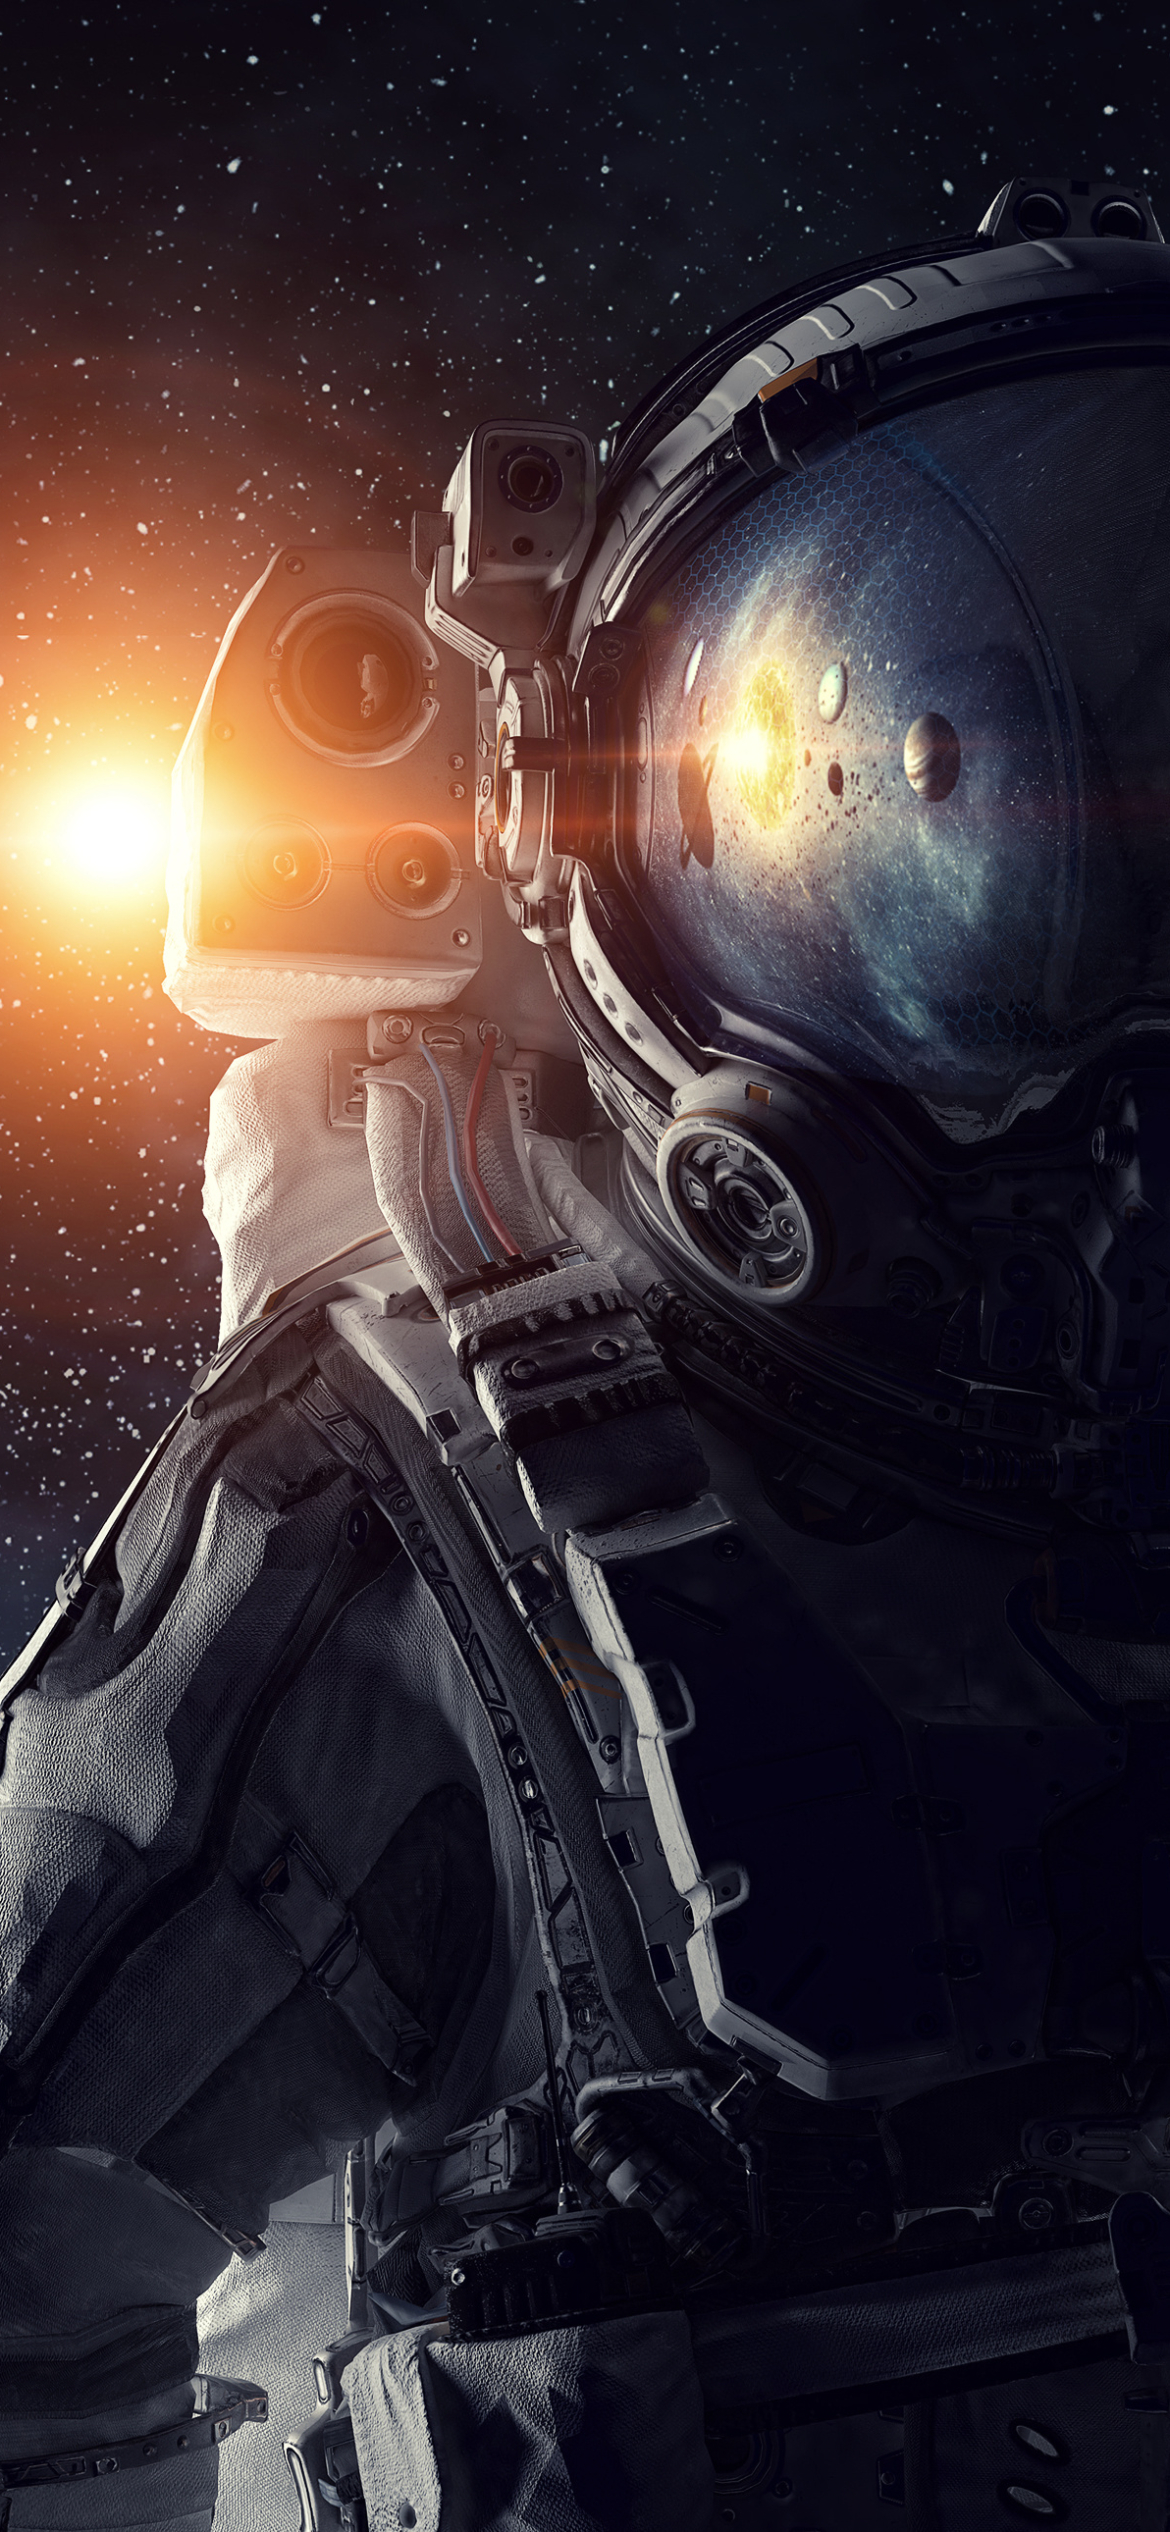 Với hình ảnh phi hành gia khoác trên mình bộ áo giáp và đang tập trung lúc chuẩn bị sẵn sàng cho phiêu lưu bất tận trong không gian, bức hình nền điện thoại Sci Fi Astronaut sẽ đưa bạn vào một thế giới siêu viễn tưởng đầy độc đáo.